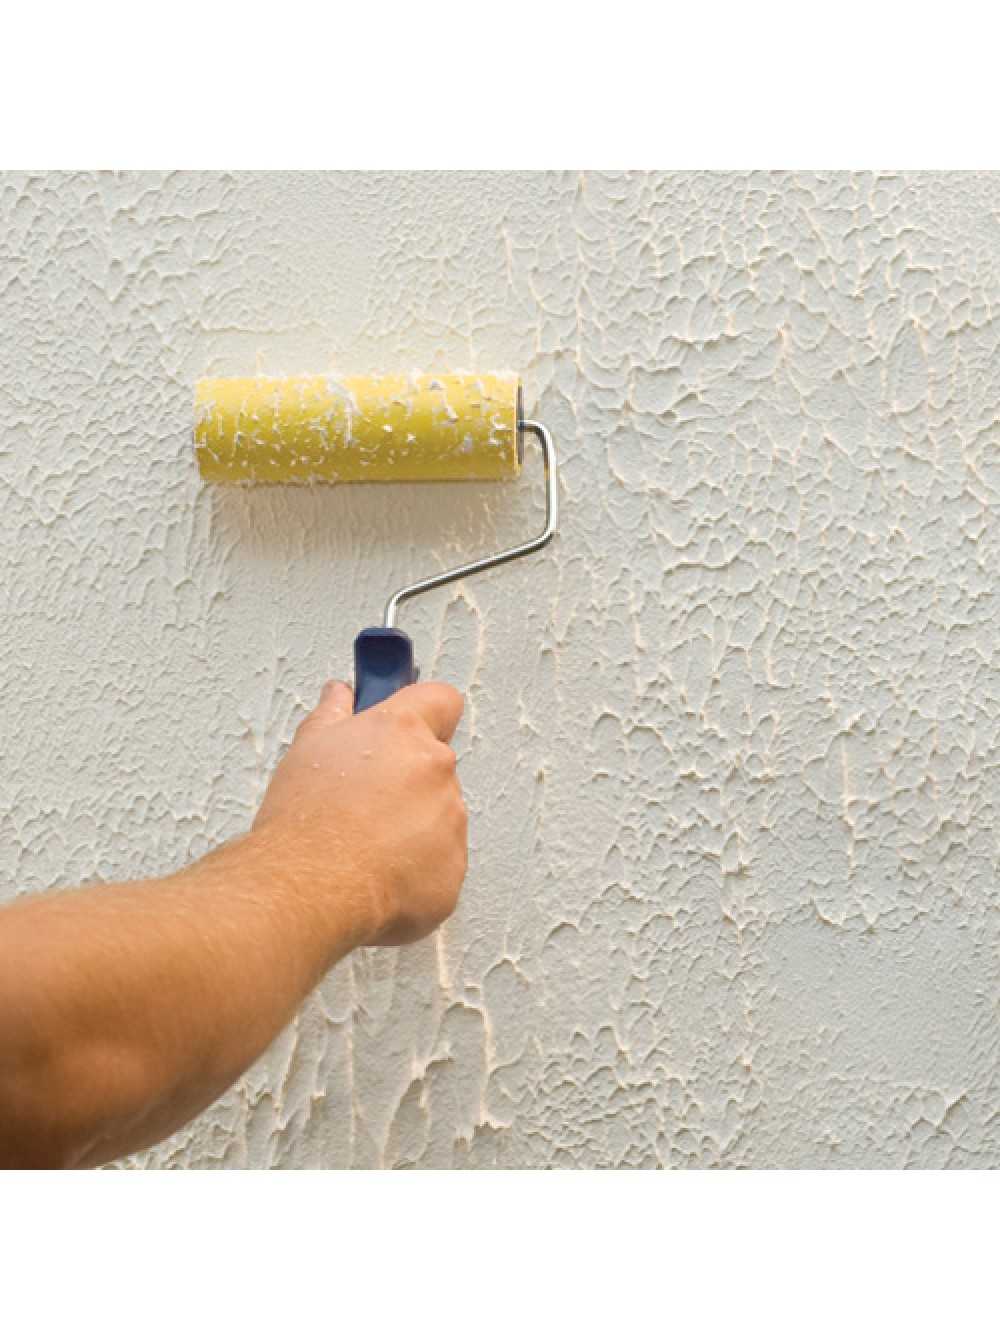 Фактурная краска для стен и особенности ее применения – советы по ремонту